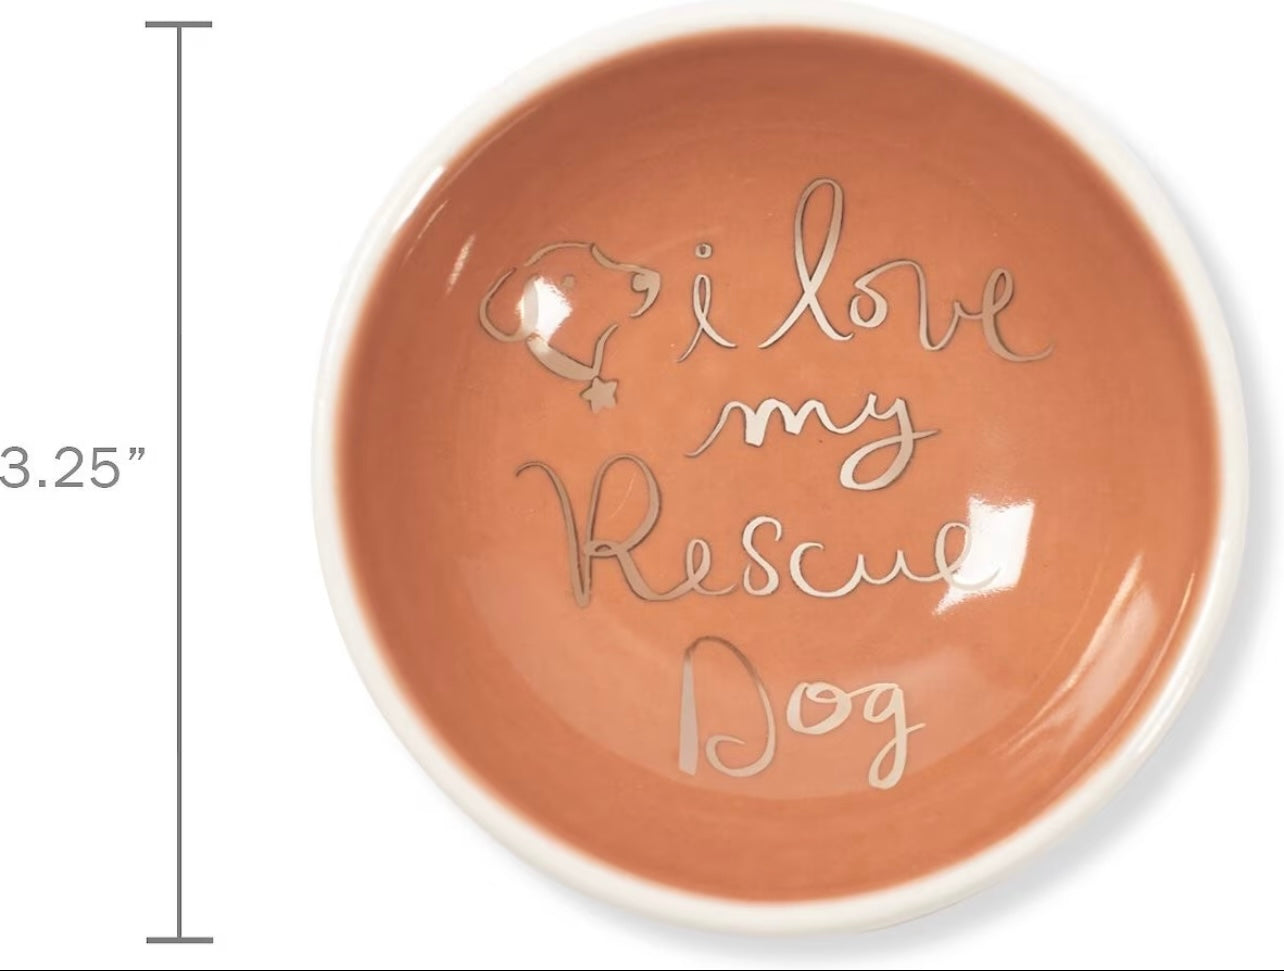 “I Love My Rescue Dog” Trinket Dish